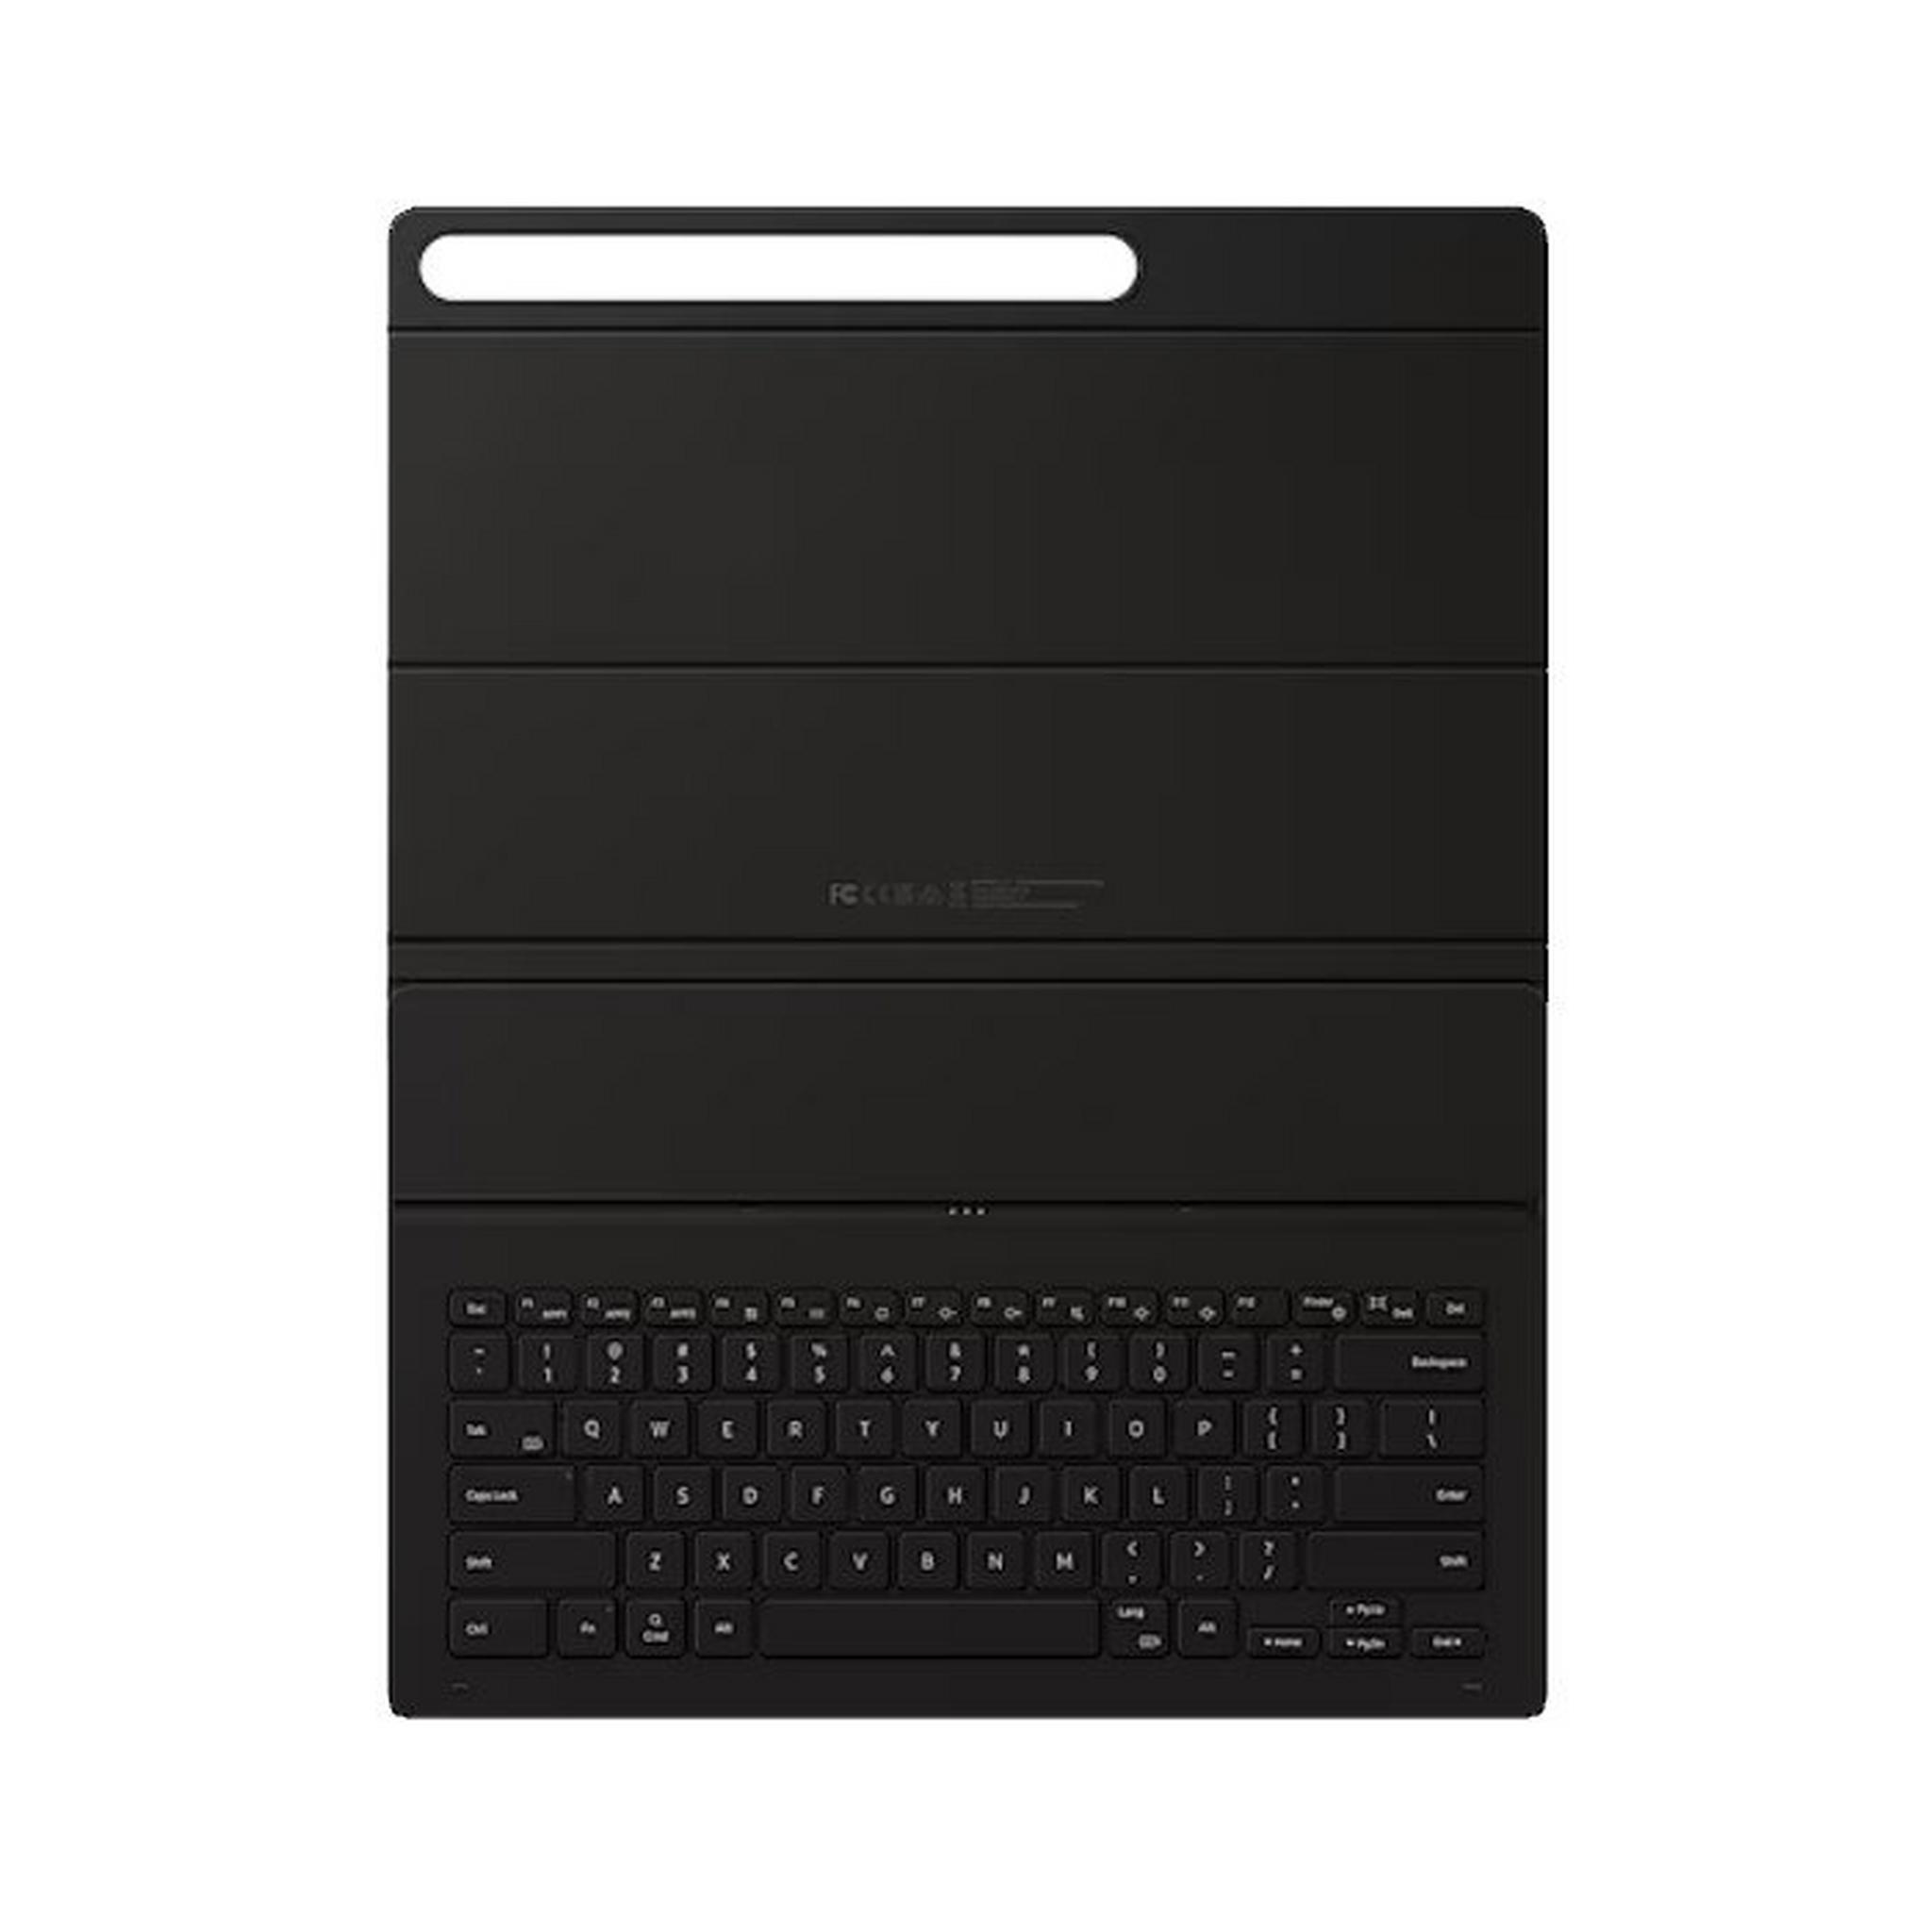 غطاء لوحة مفاتيح نحيف جالكسي تاب S9 الترا بوك من سامسونج، EF-DX910UBEGAE - أسود